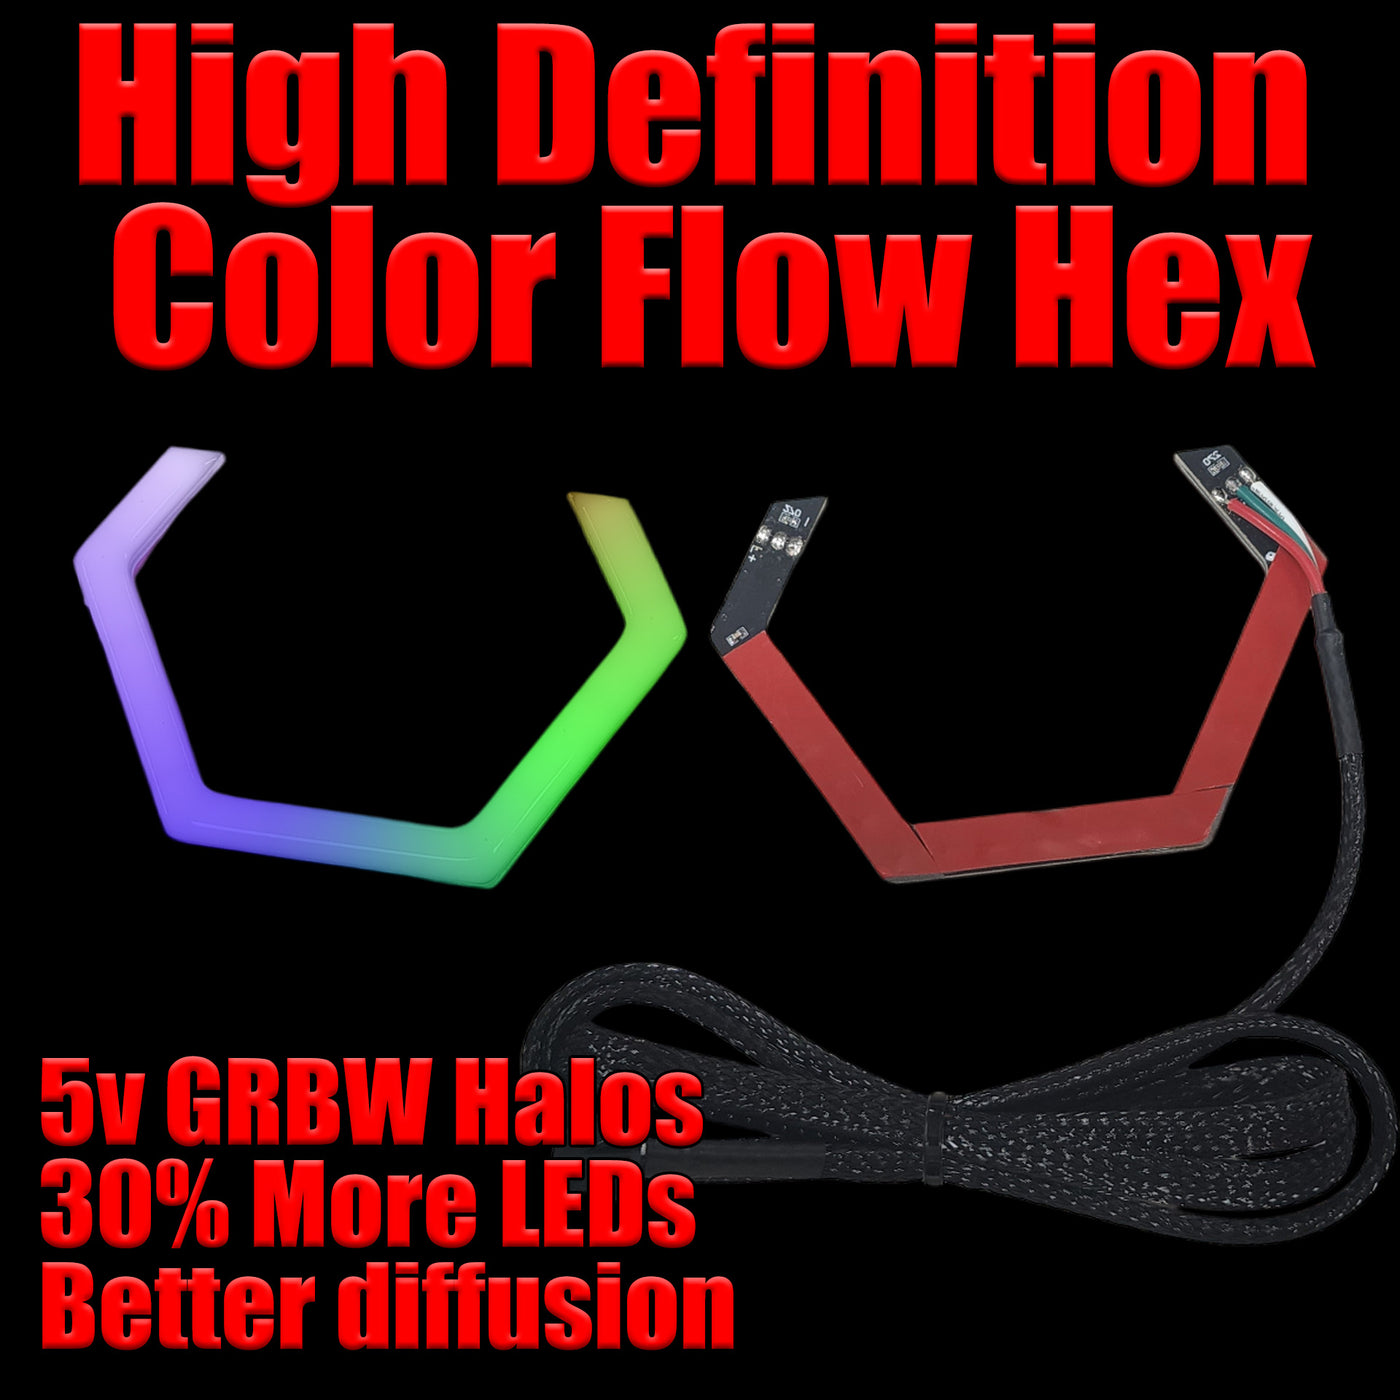 High Definition Color Flow Hex Halos - 5v SK6812 RGBW